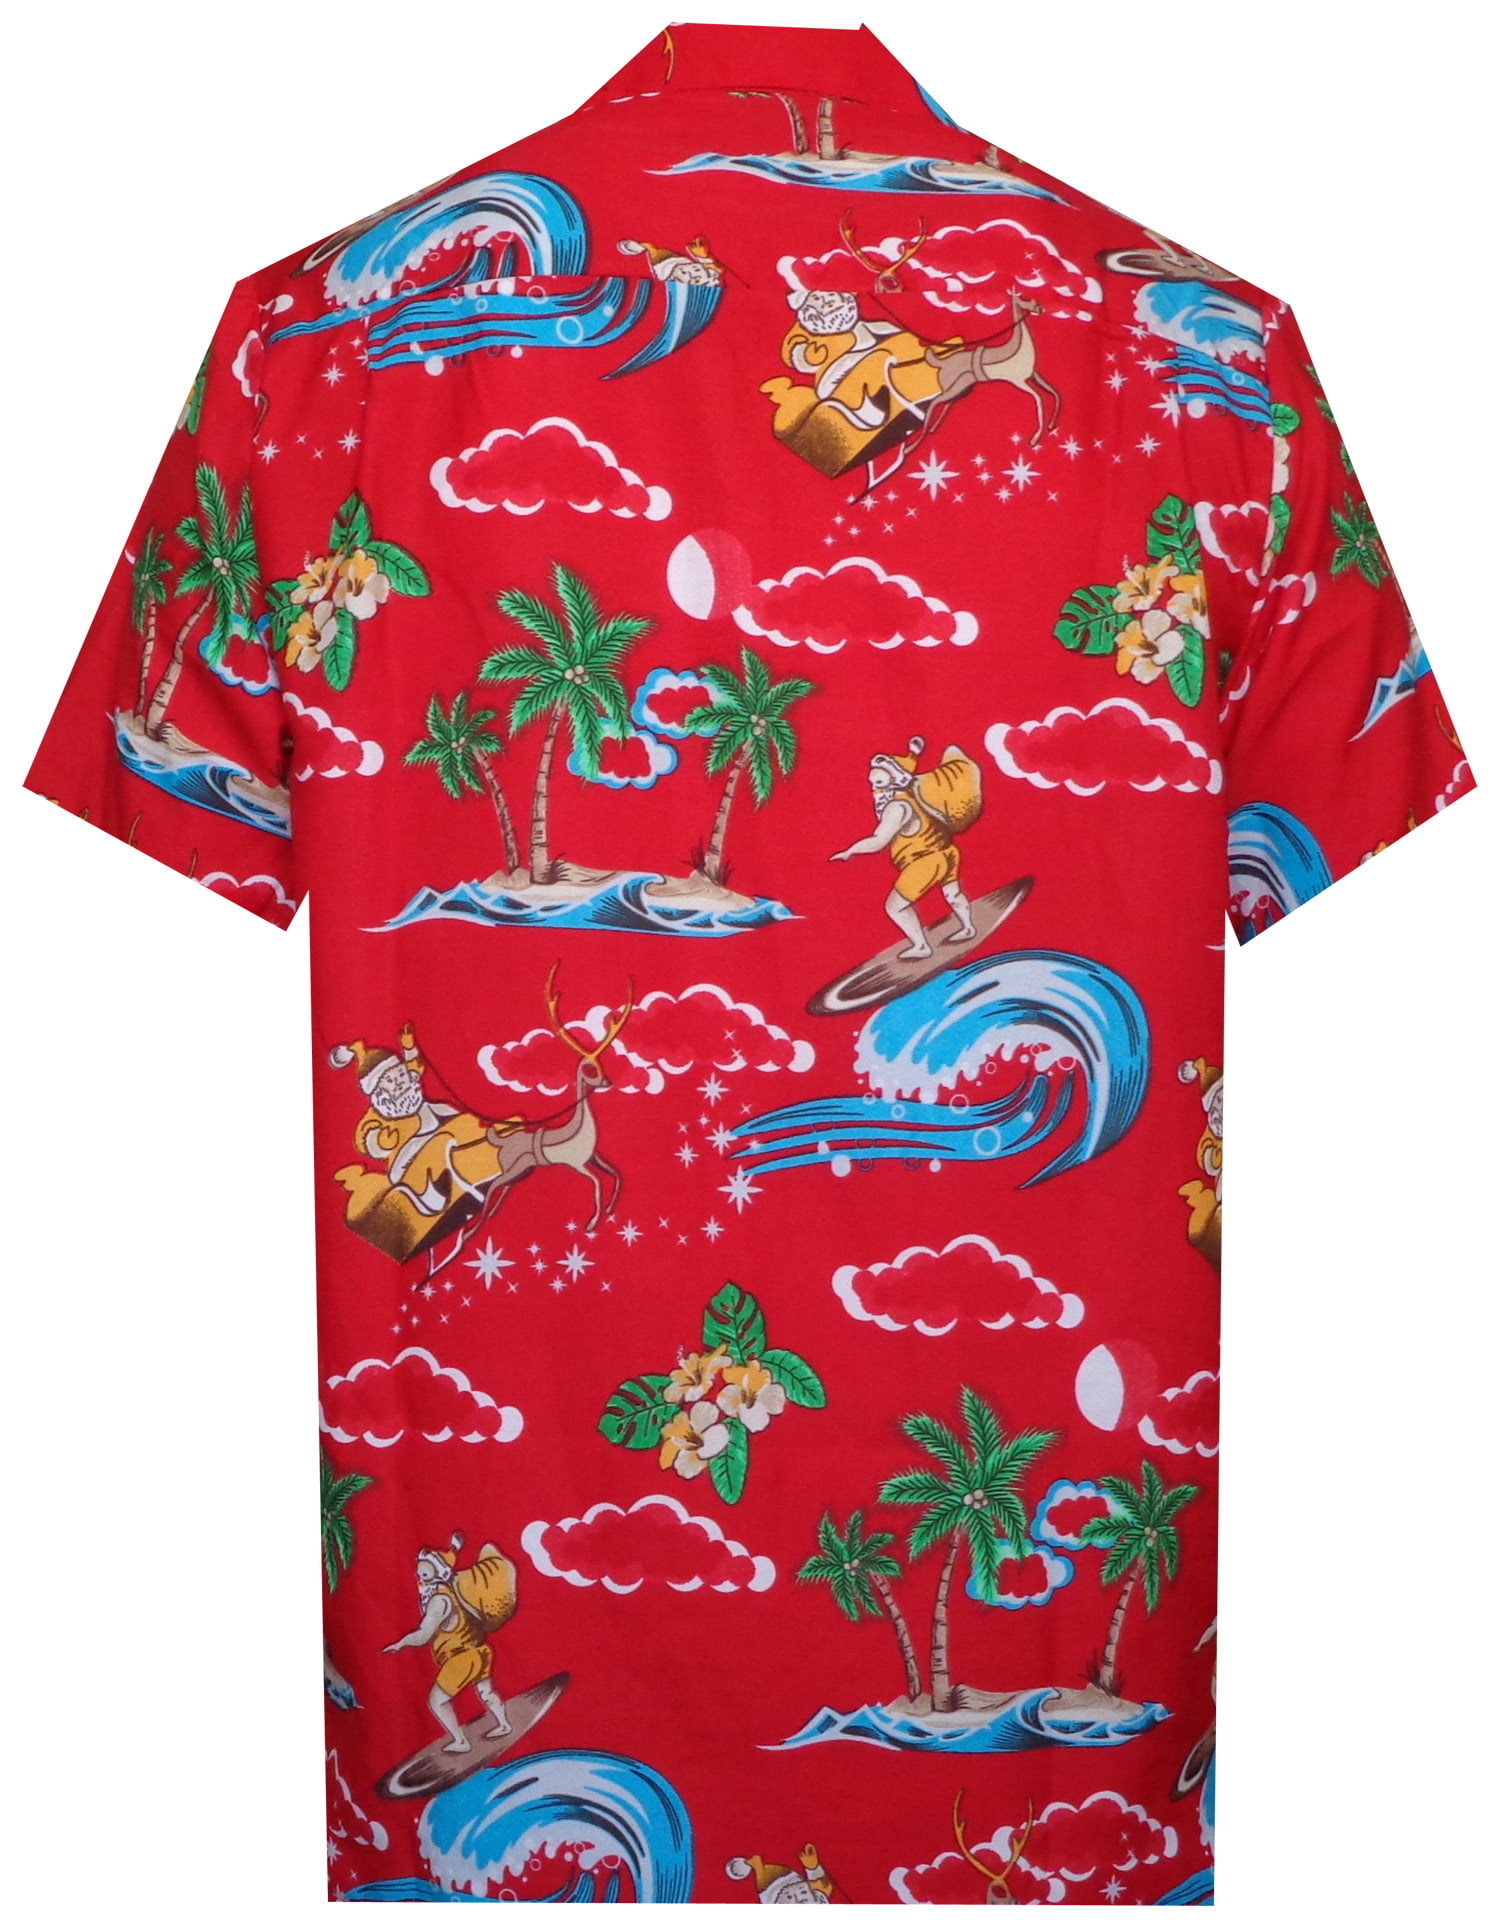 Alvish Hawaiian Shirts Boys Christmas Santa Beach Party Holiday Casual